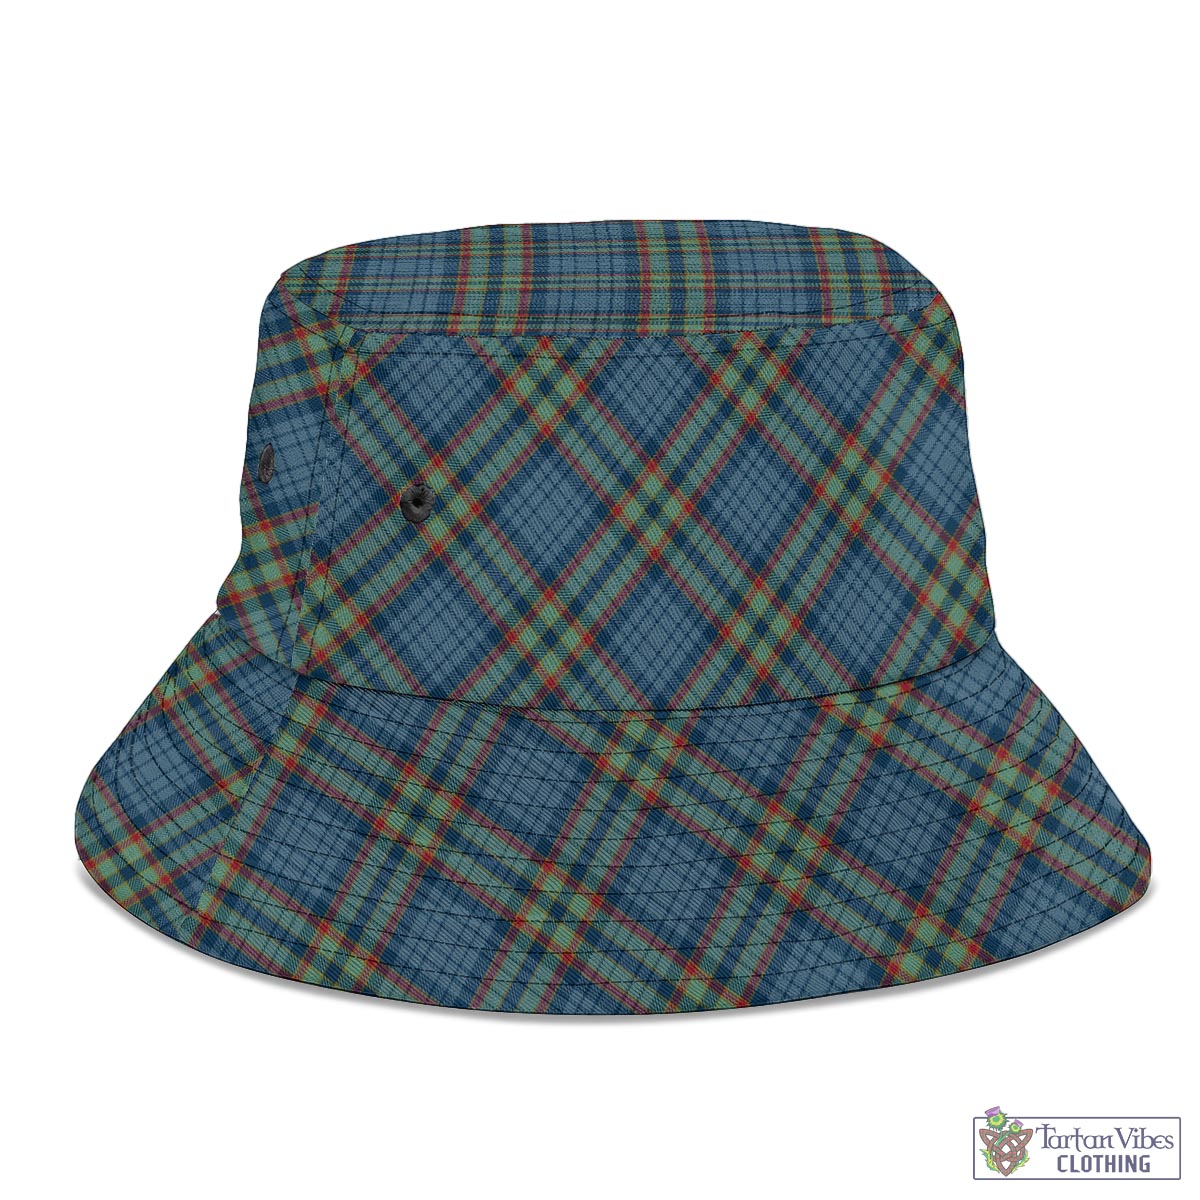 Tartan Vibes Clothing Ralston UK Tartan Bucket Hat